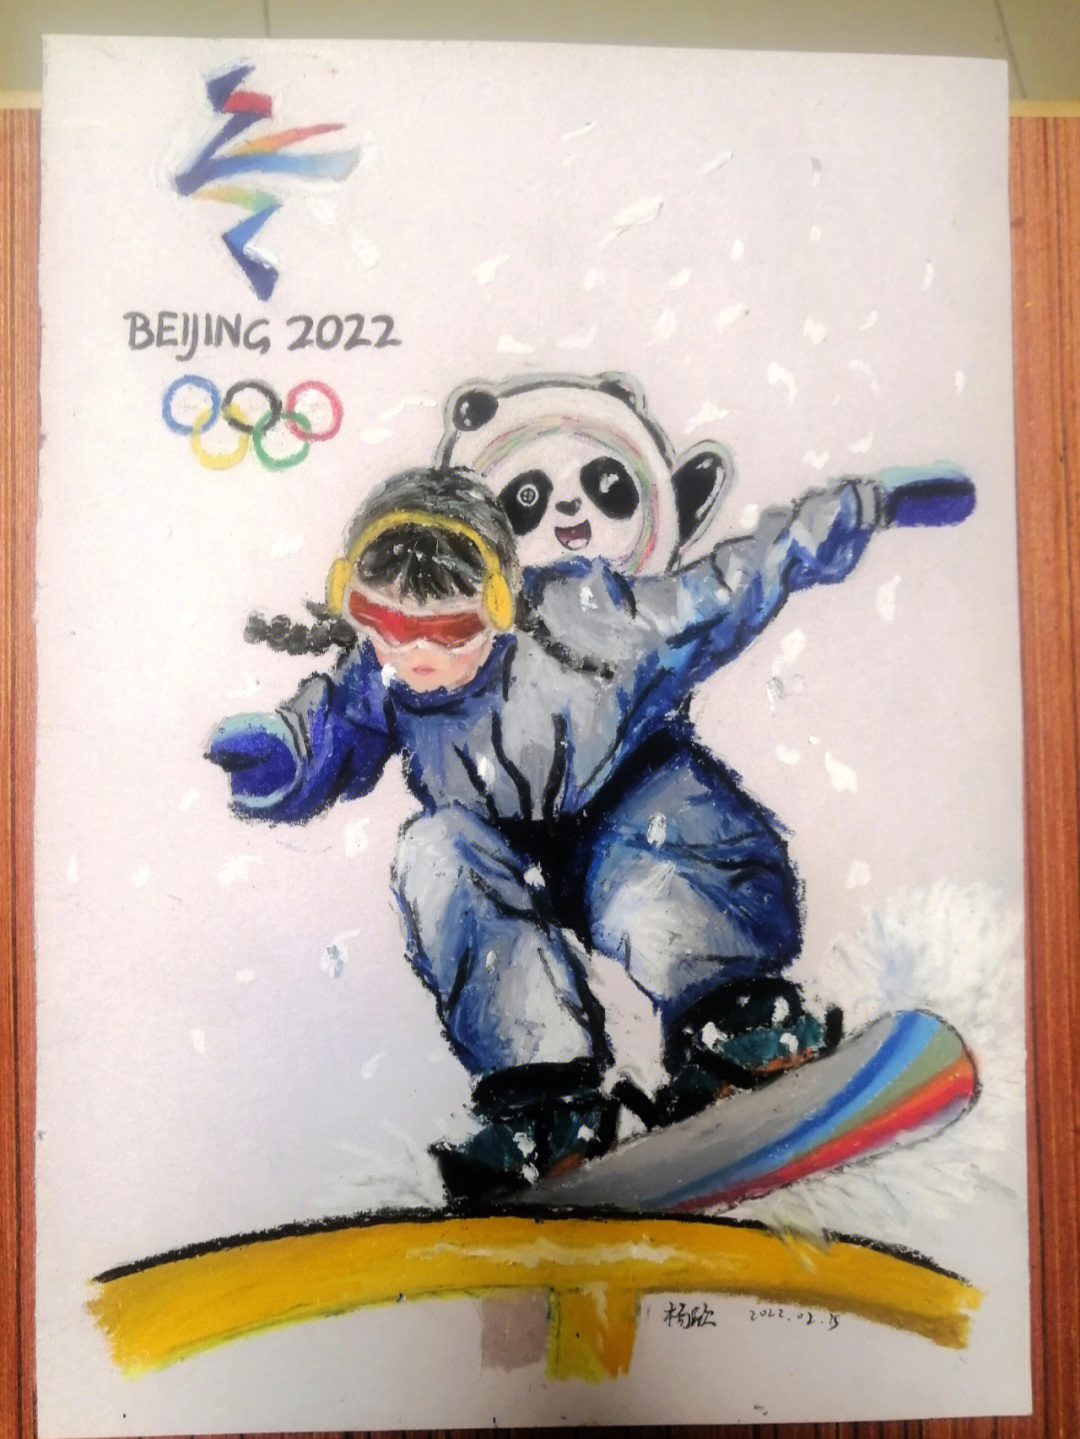 北京2022冬奥会单板滑雪绘画手抄报模板